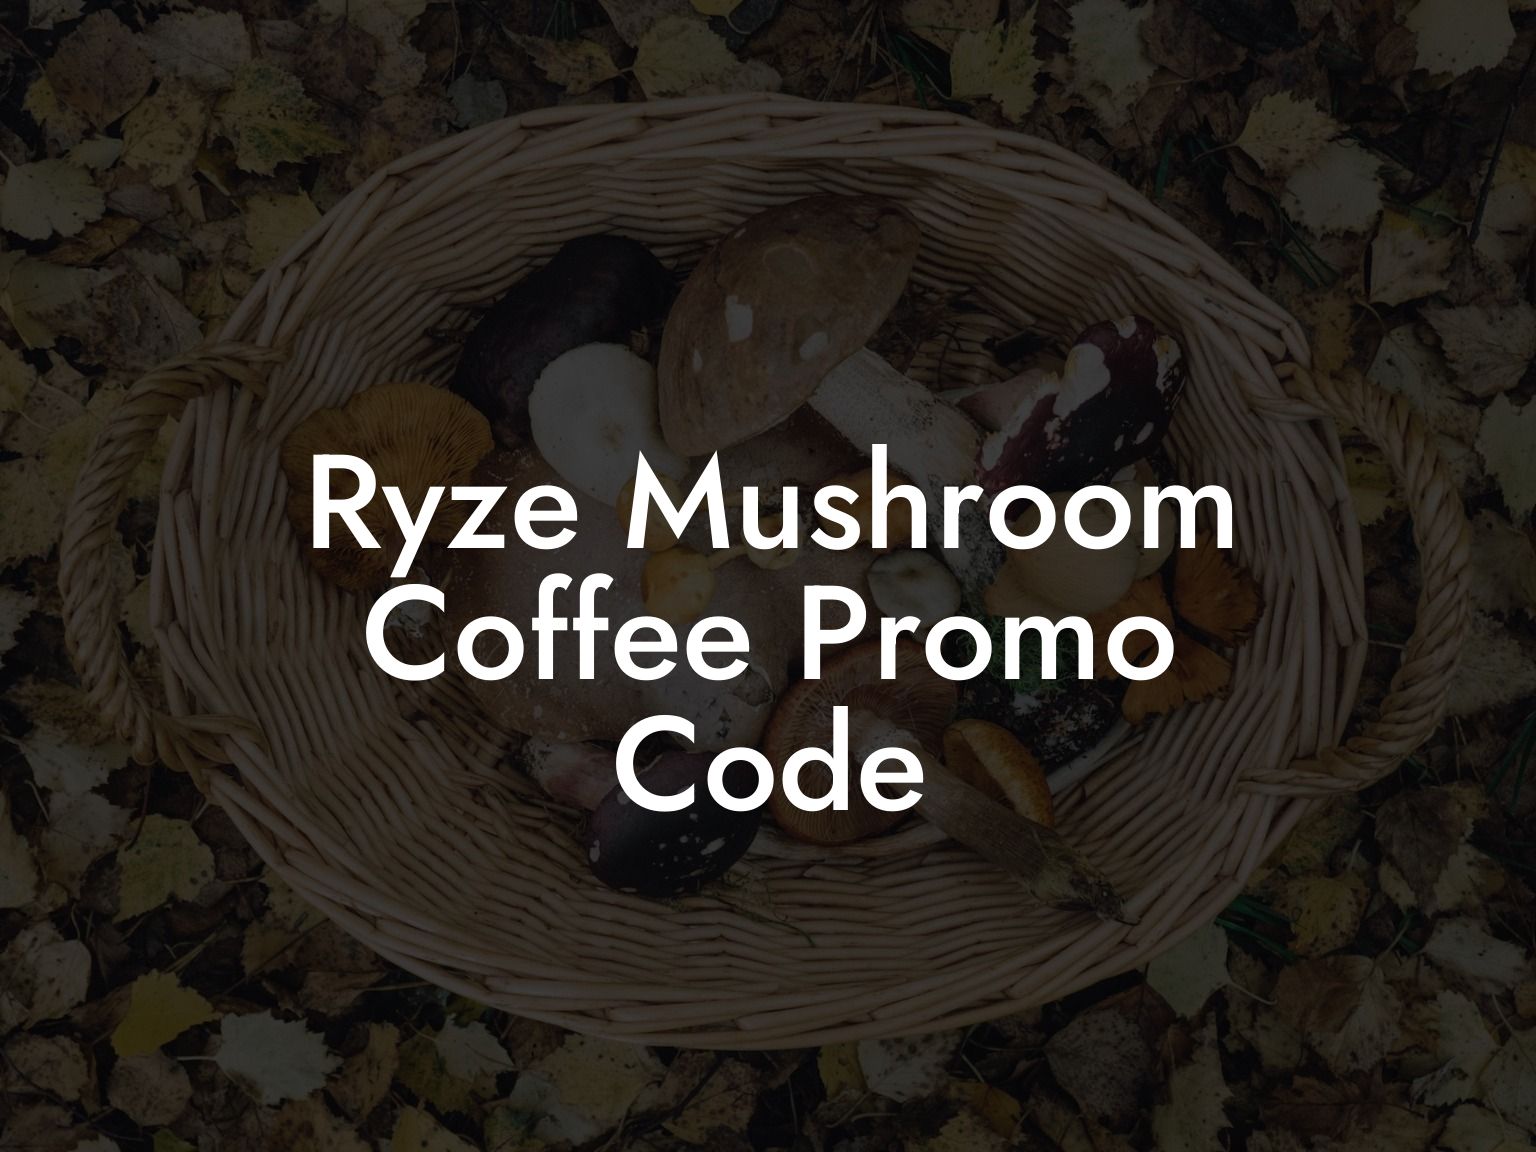 Ryze Mushroom Coffee Promo Code Mr Mushroom